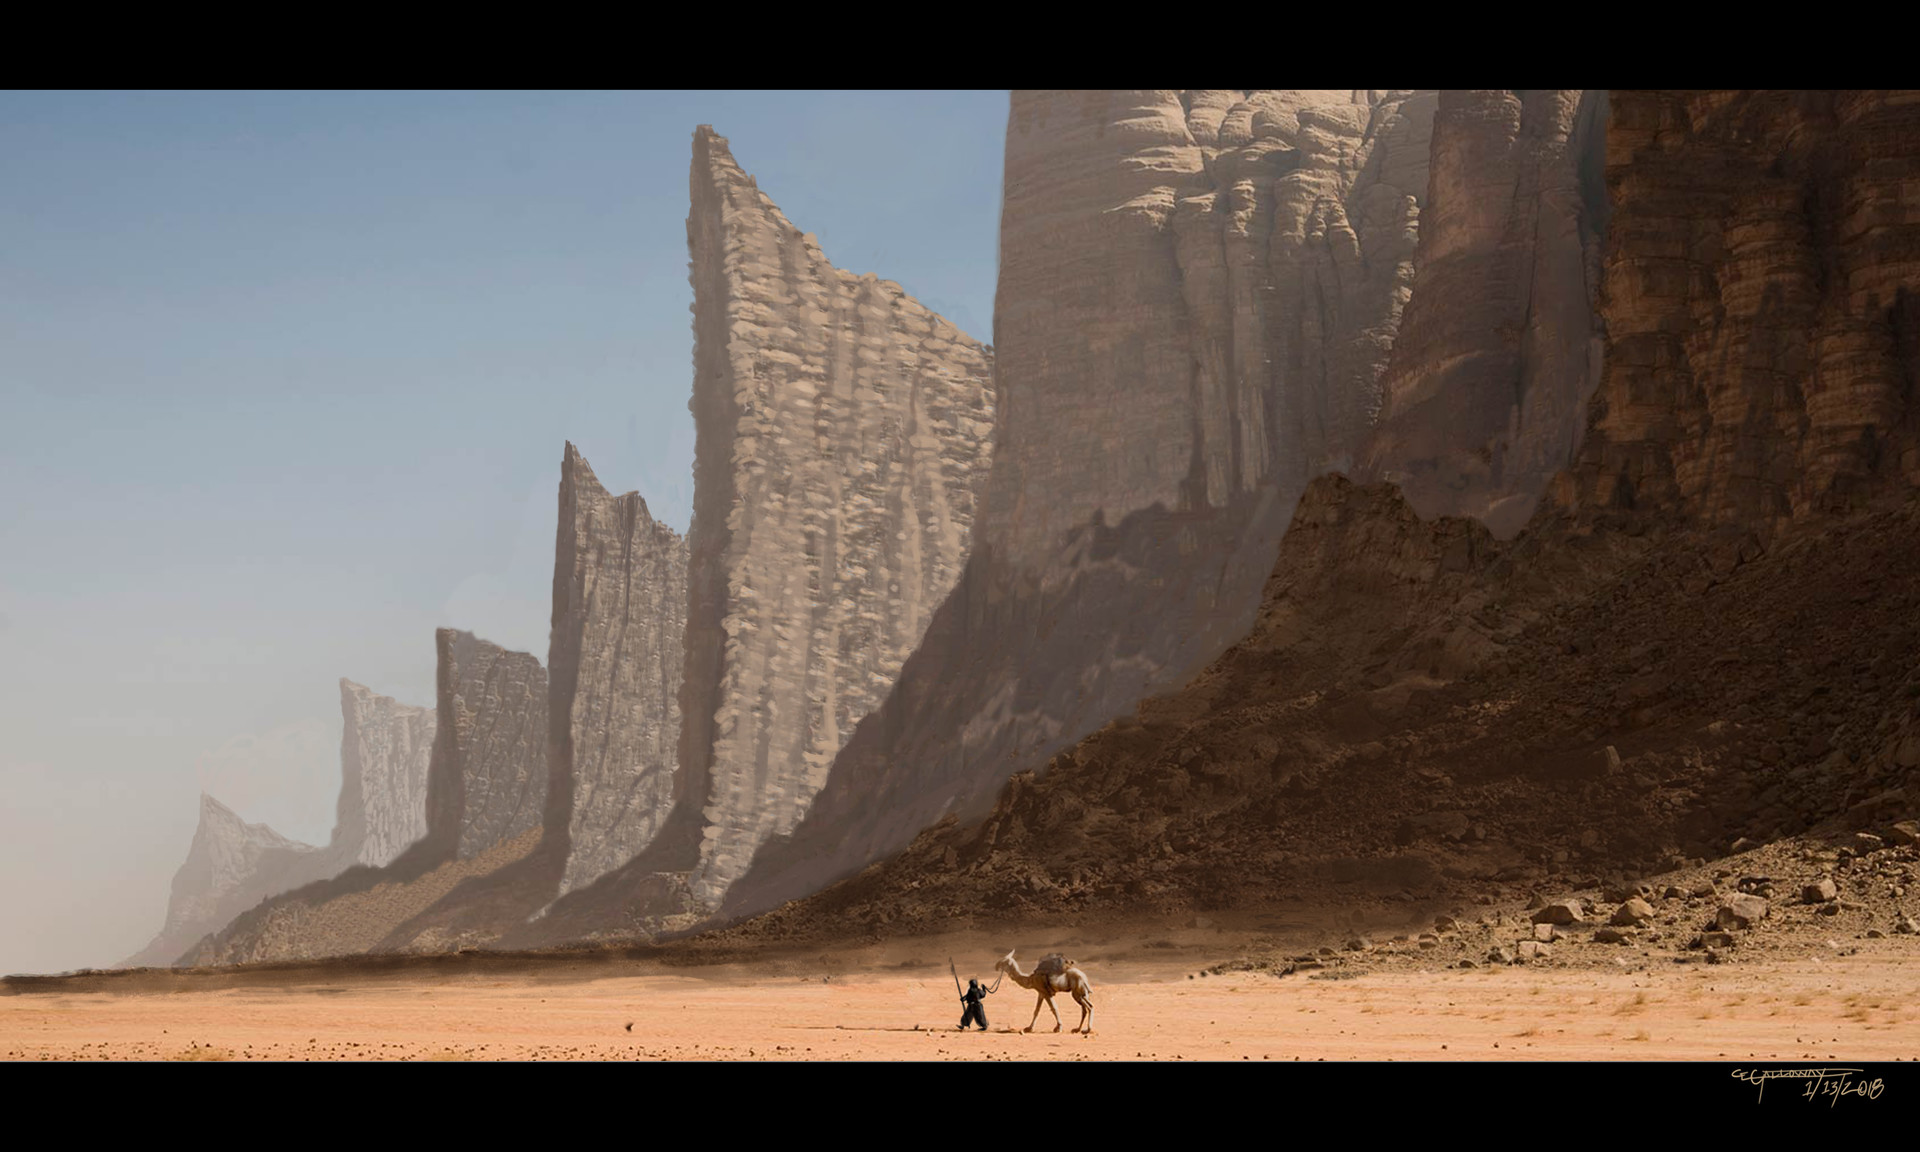 c-e-galloway-alien-desert-landscape-01.jpg